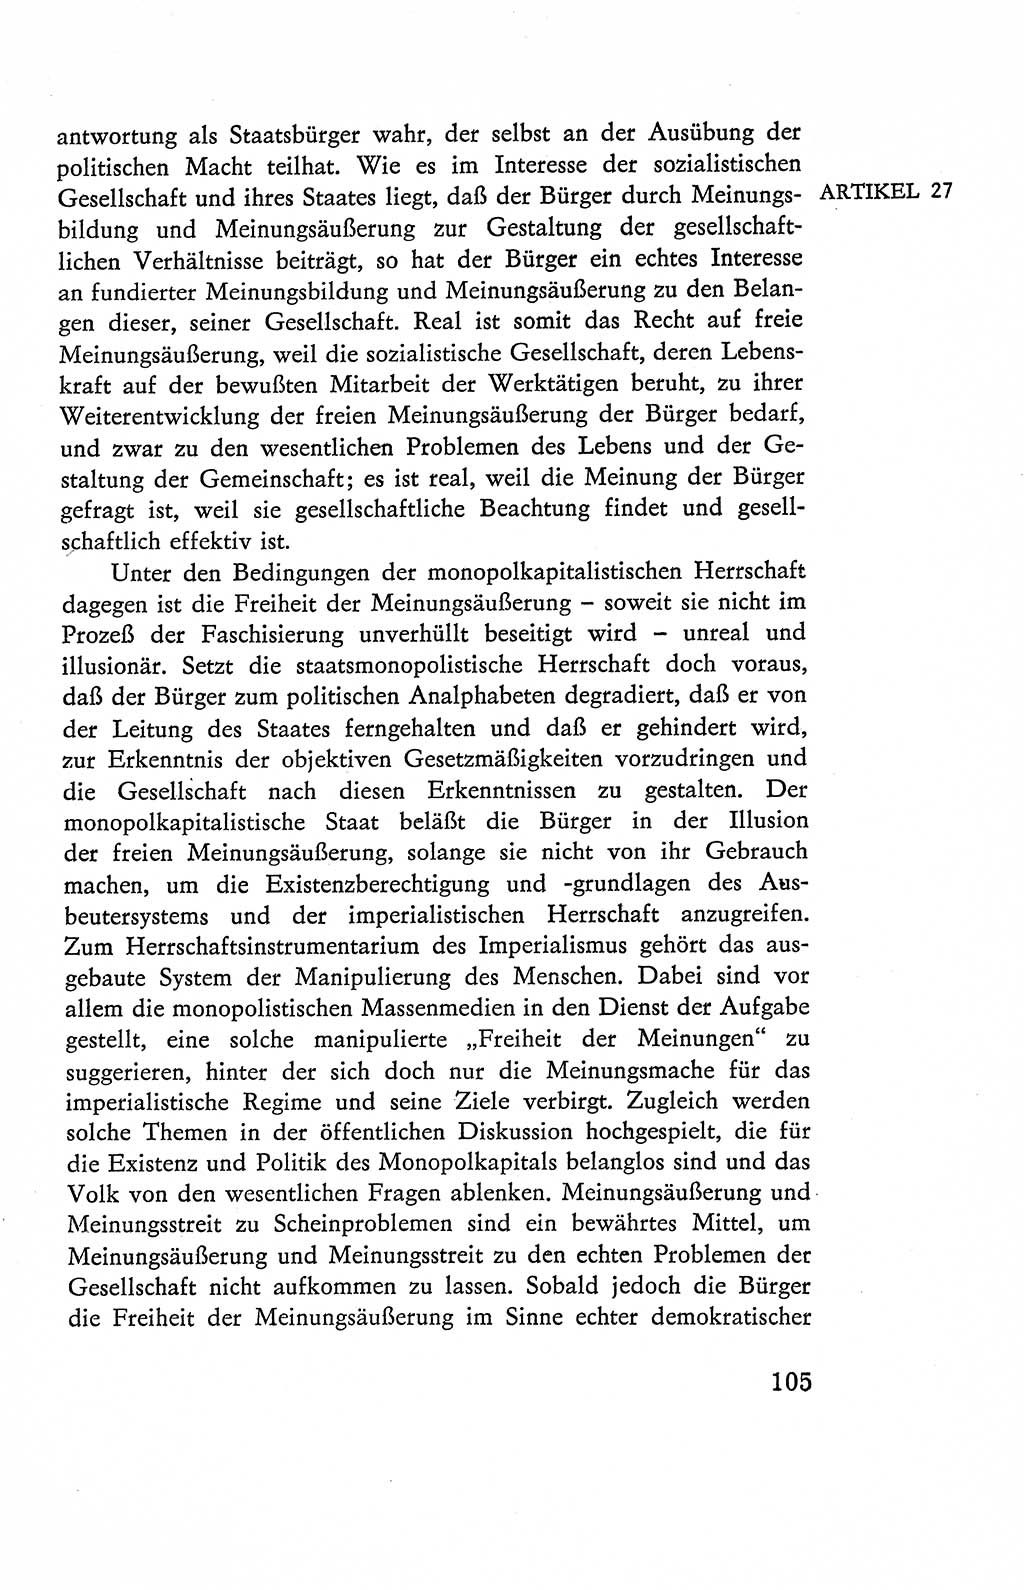 Verfassung der Deutschen Demokratischen Republik (DDR), Dokumente, Kommentar 1969, Band 2, Seite 105 (Verf. DDR Dok. Komm. 1969, Bd. 2, S. 105)